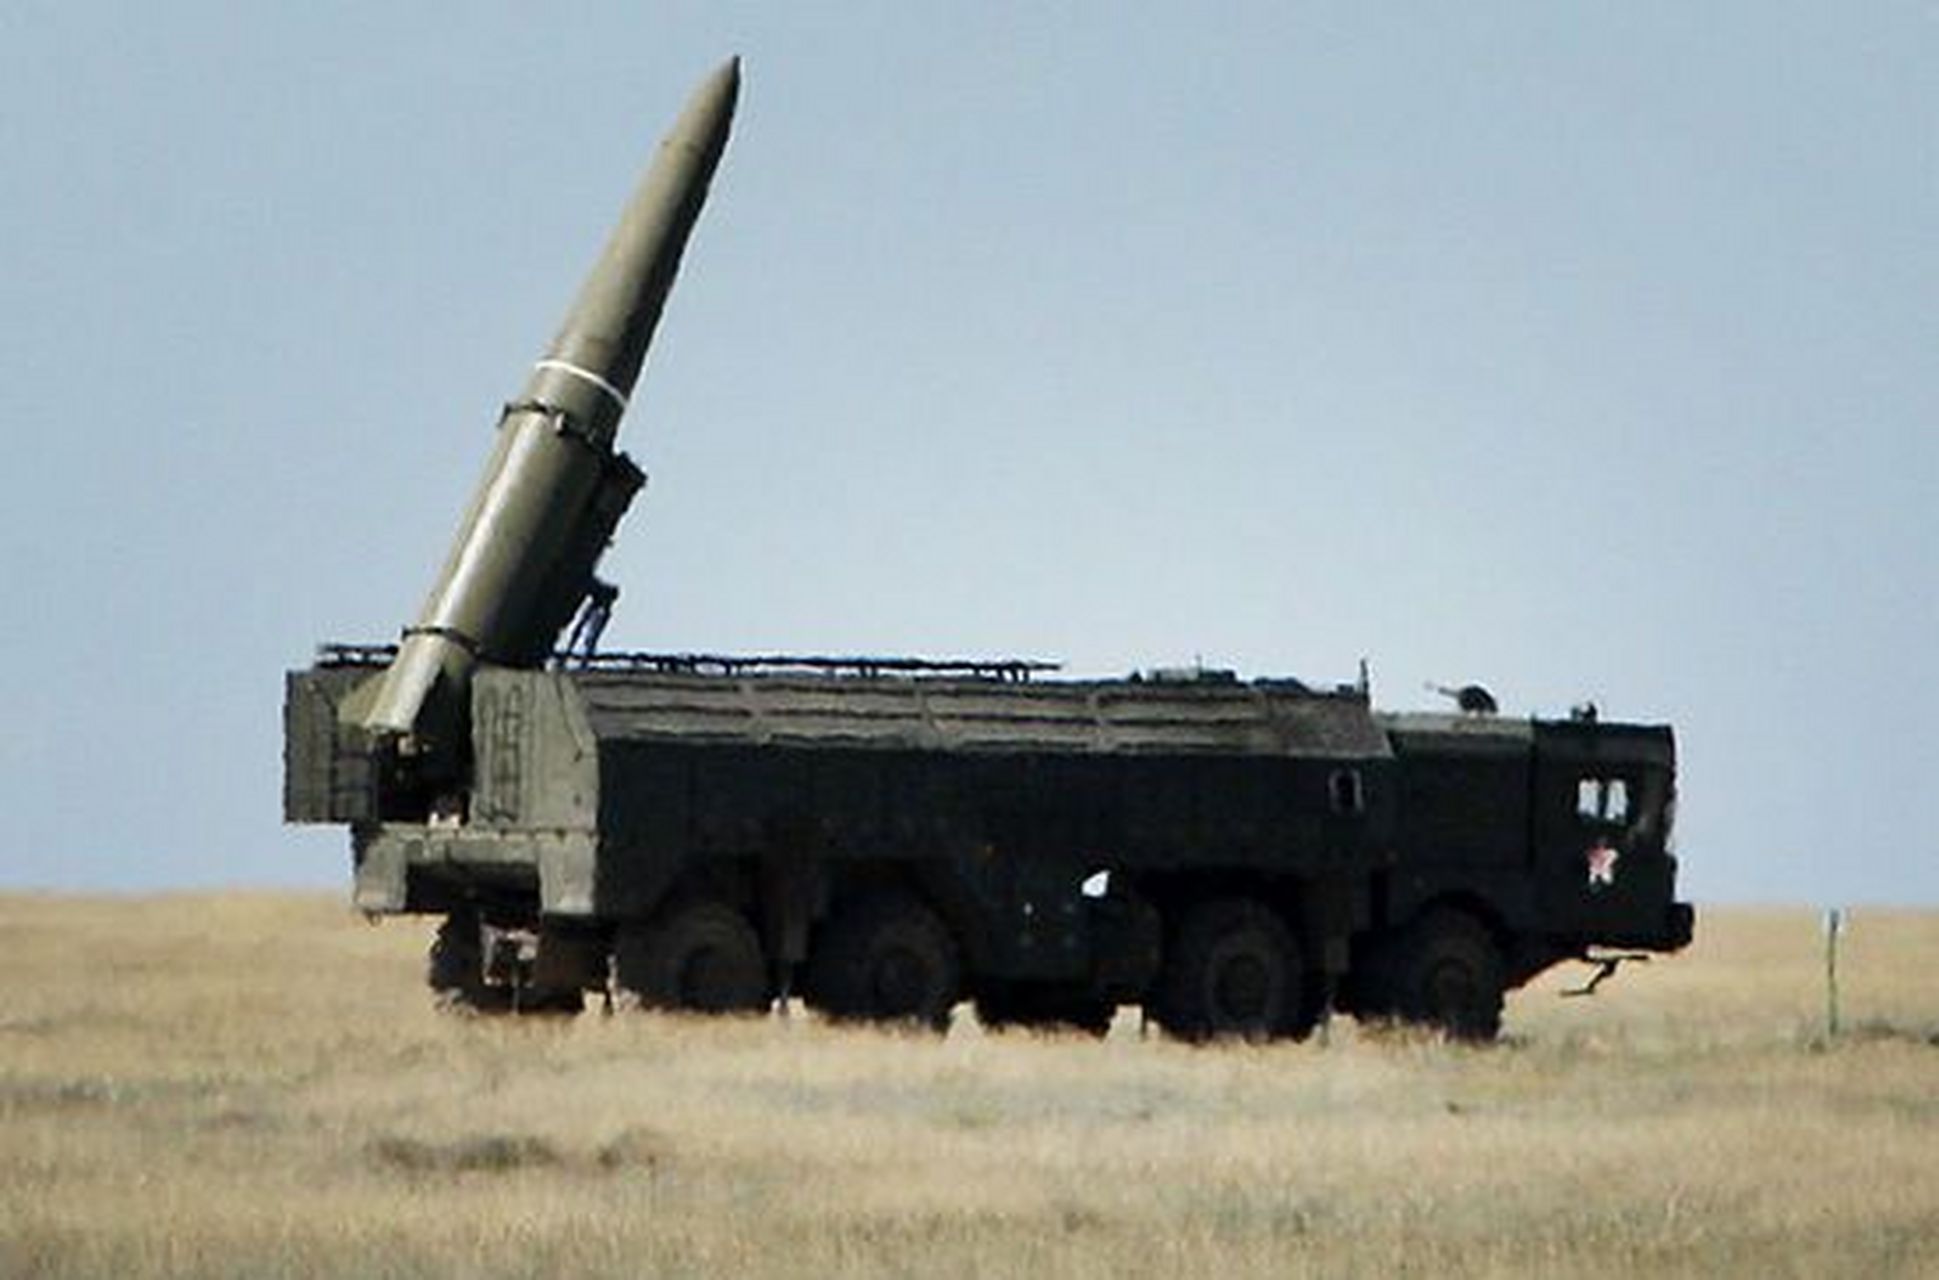 伊斯坎德尔导弹(北约的代号为ss-x-26)是俄罗斯军队装备的最先进的